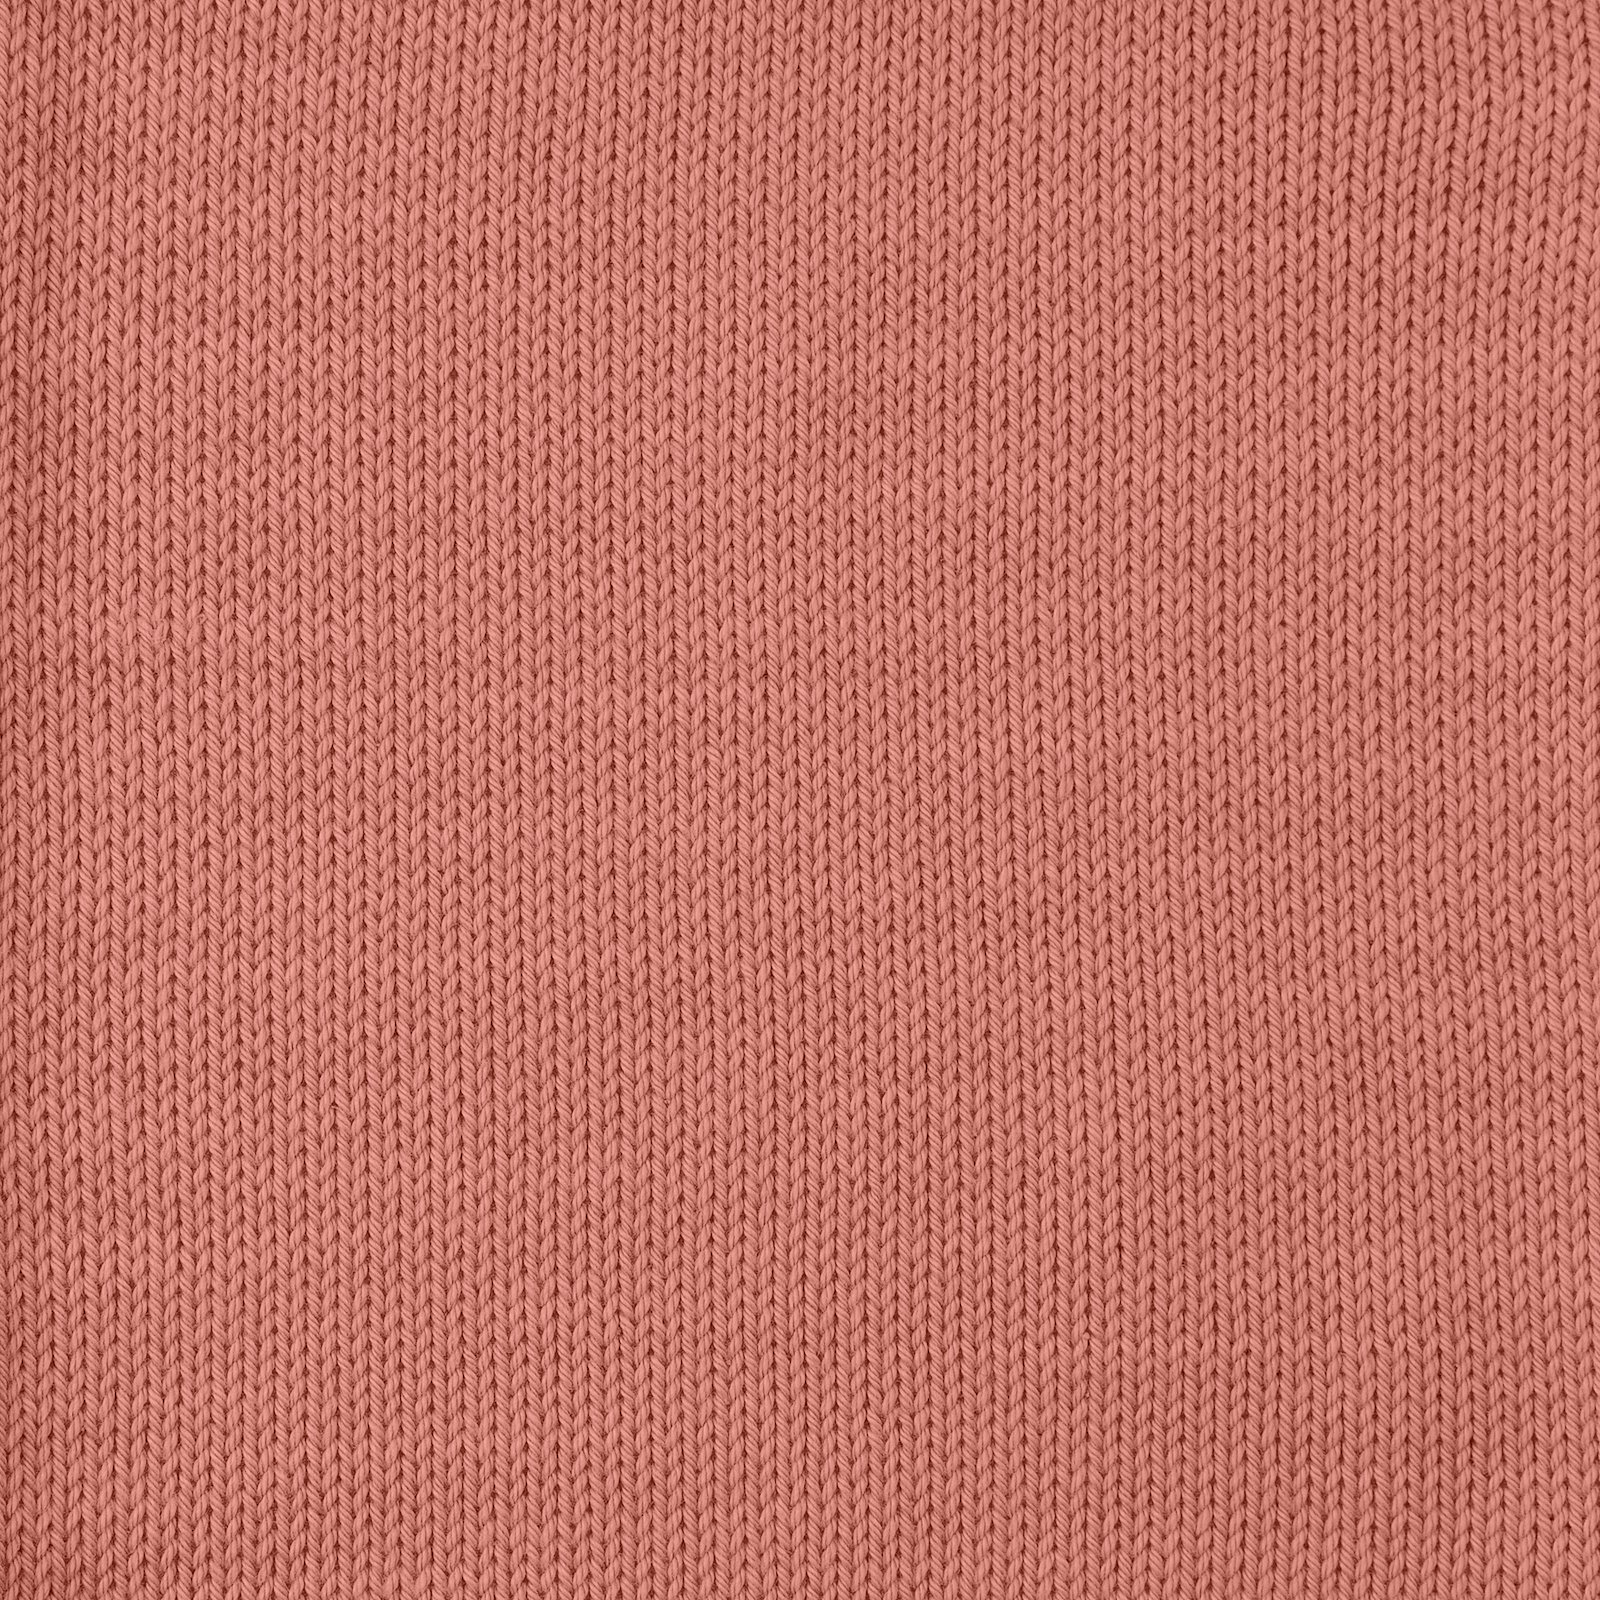 FRAYA, 100% cotton yarn "Colourful", dark rose 90060091_sskit